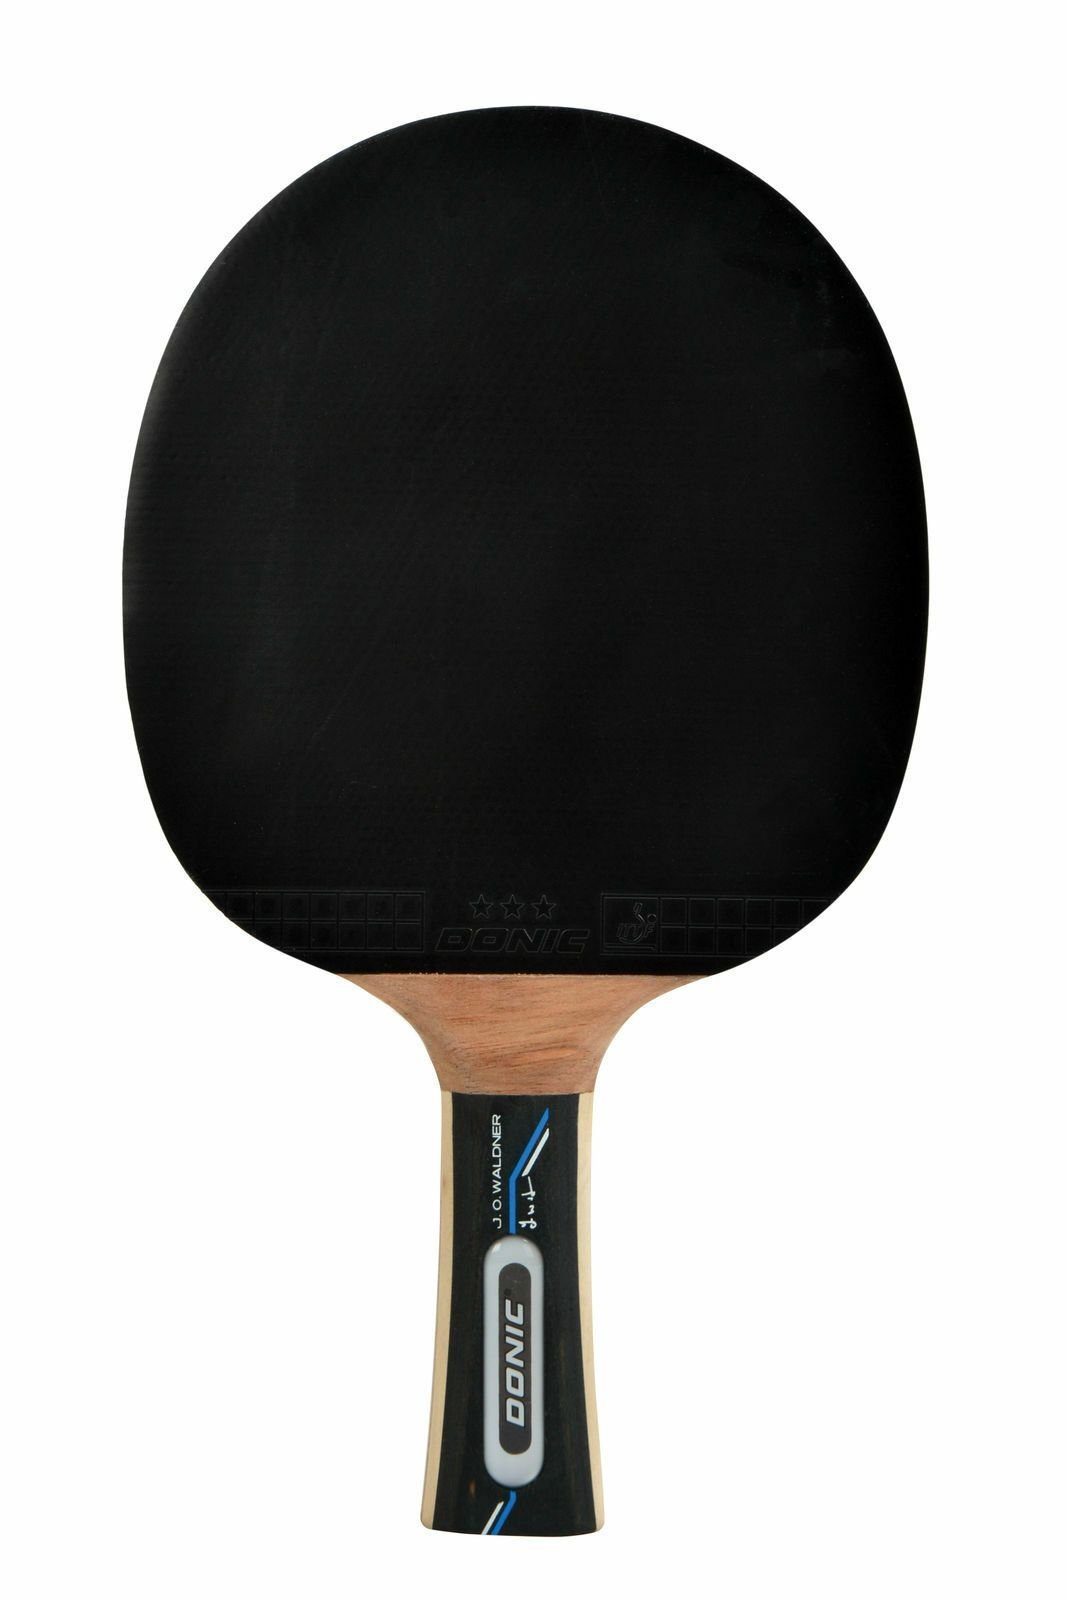 Donic-Schildkröt Tischtennisschläger Tennis Tischtennis Bat Racket Table 700, Waldner Schläger